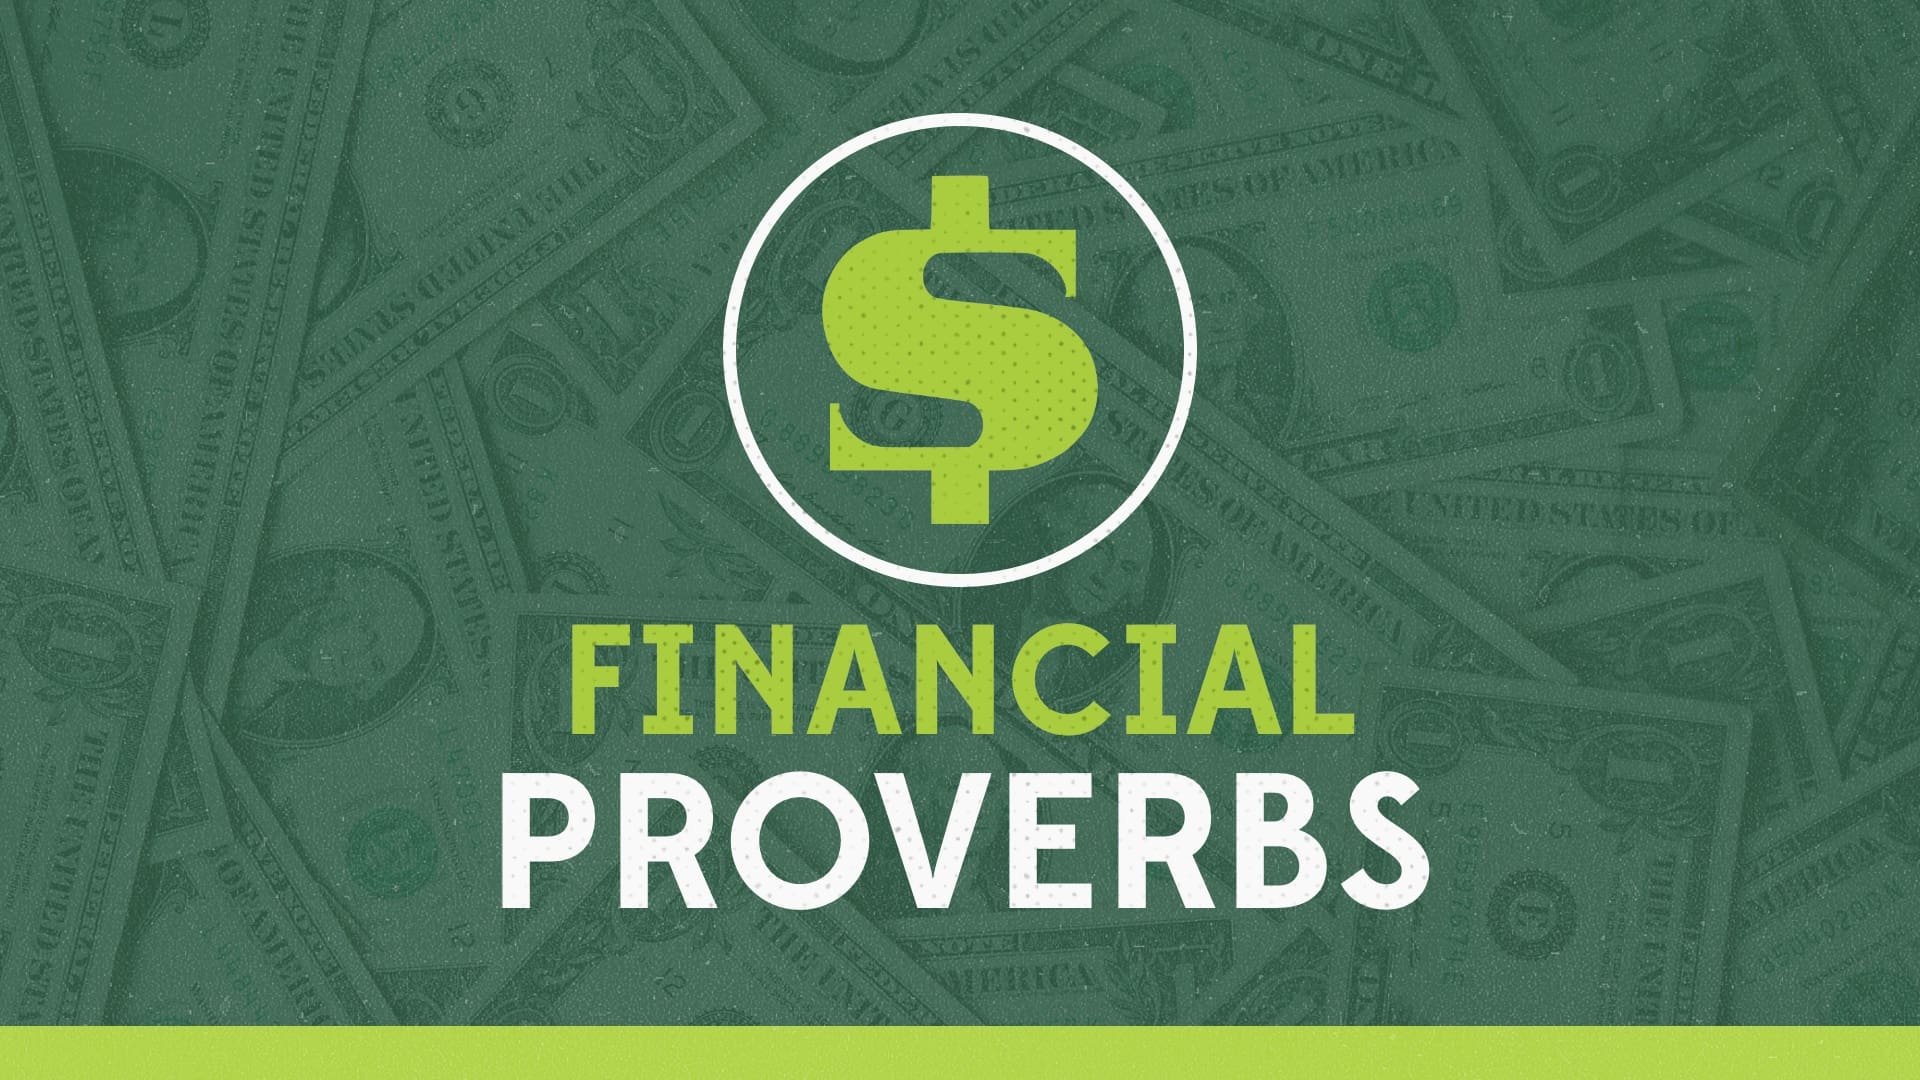 Financial Proverbs